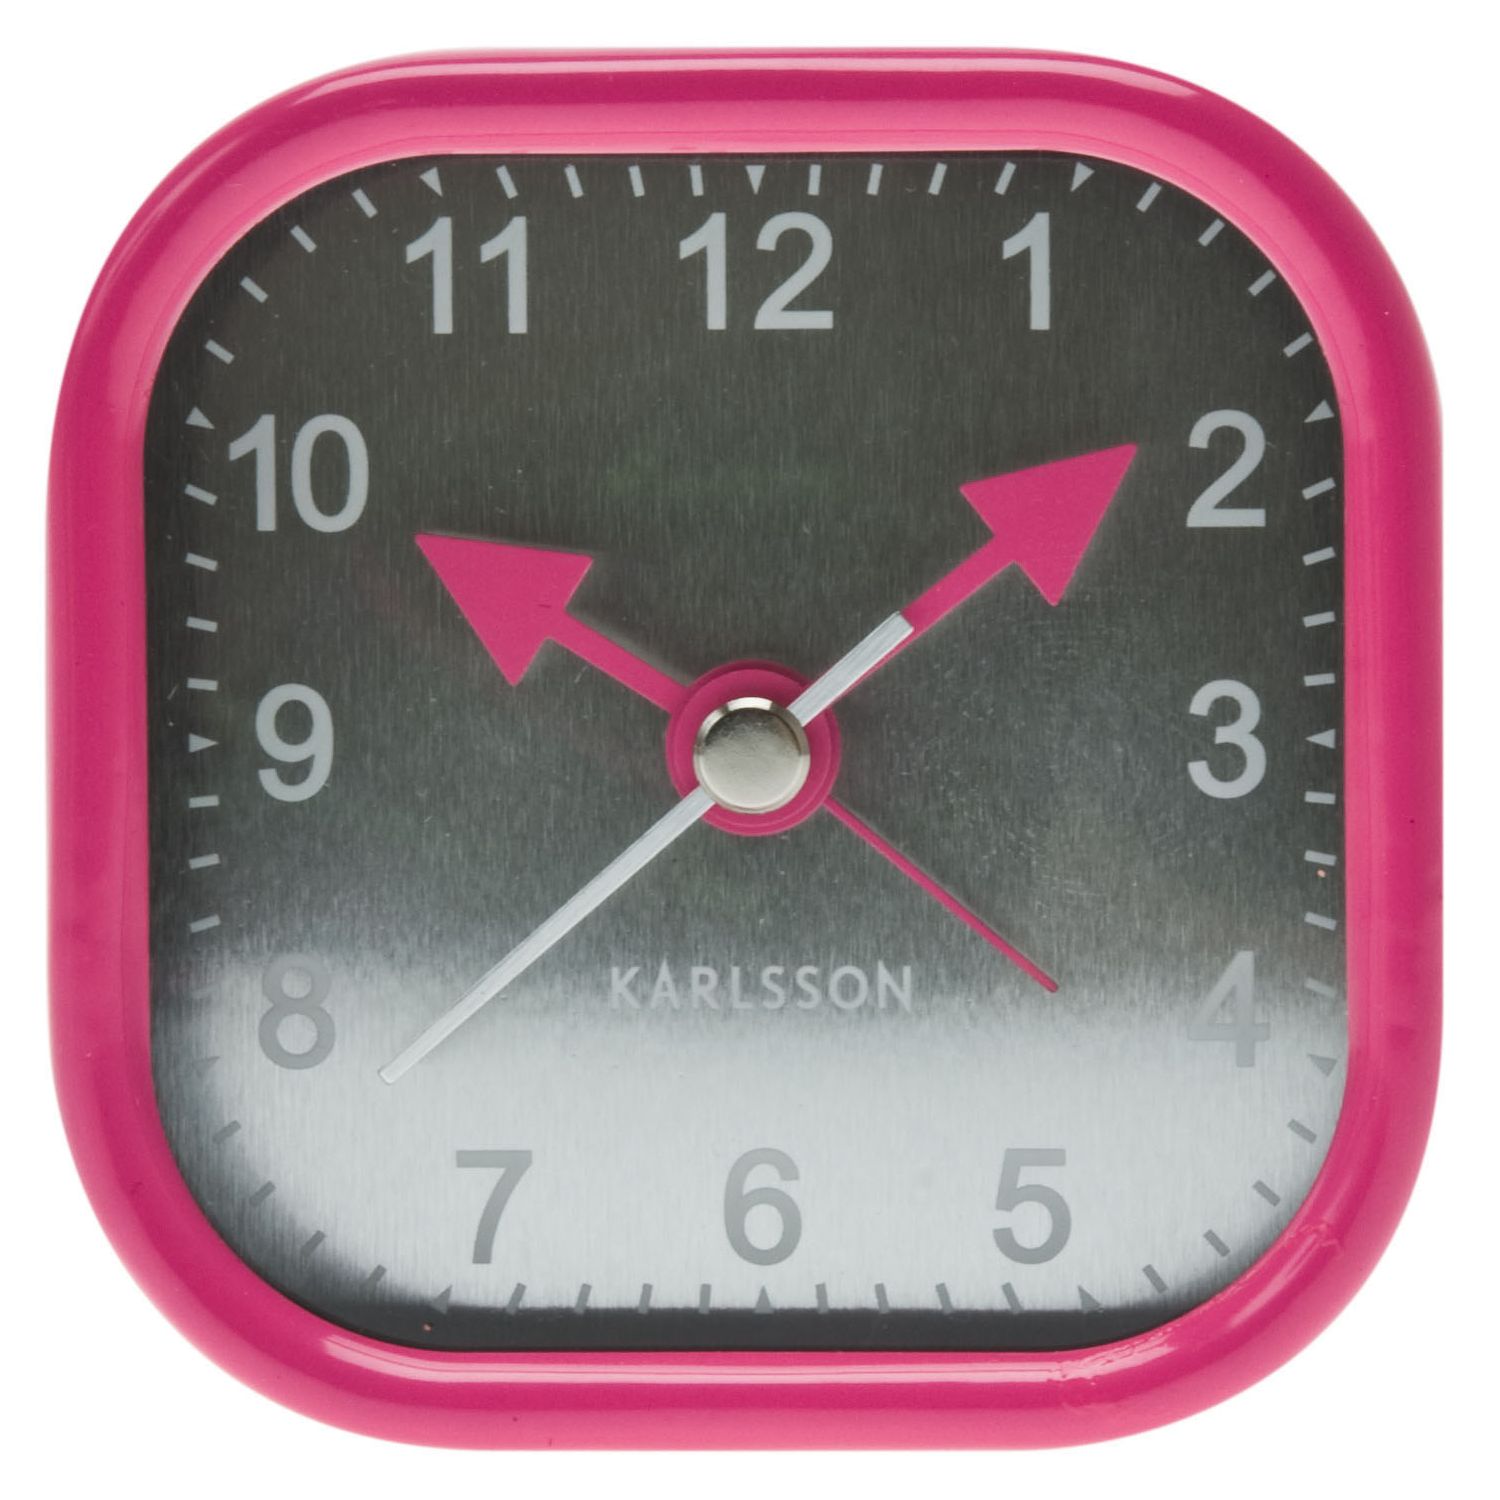 Karlsson Pointer Alarm Clock, Pink